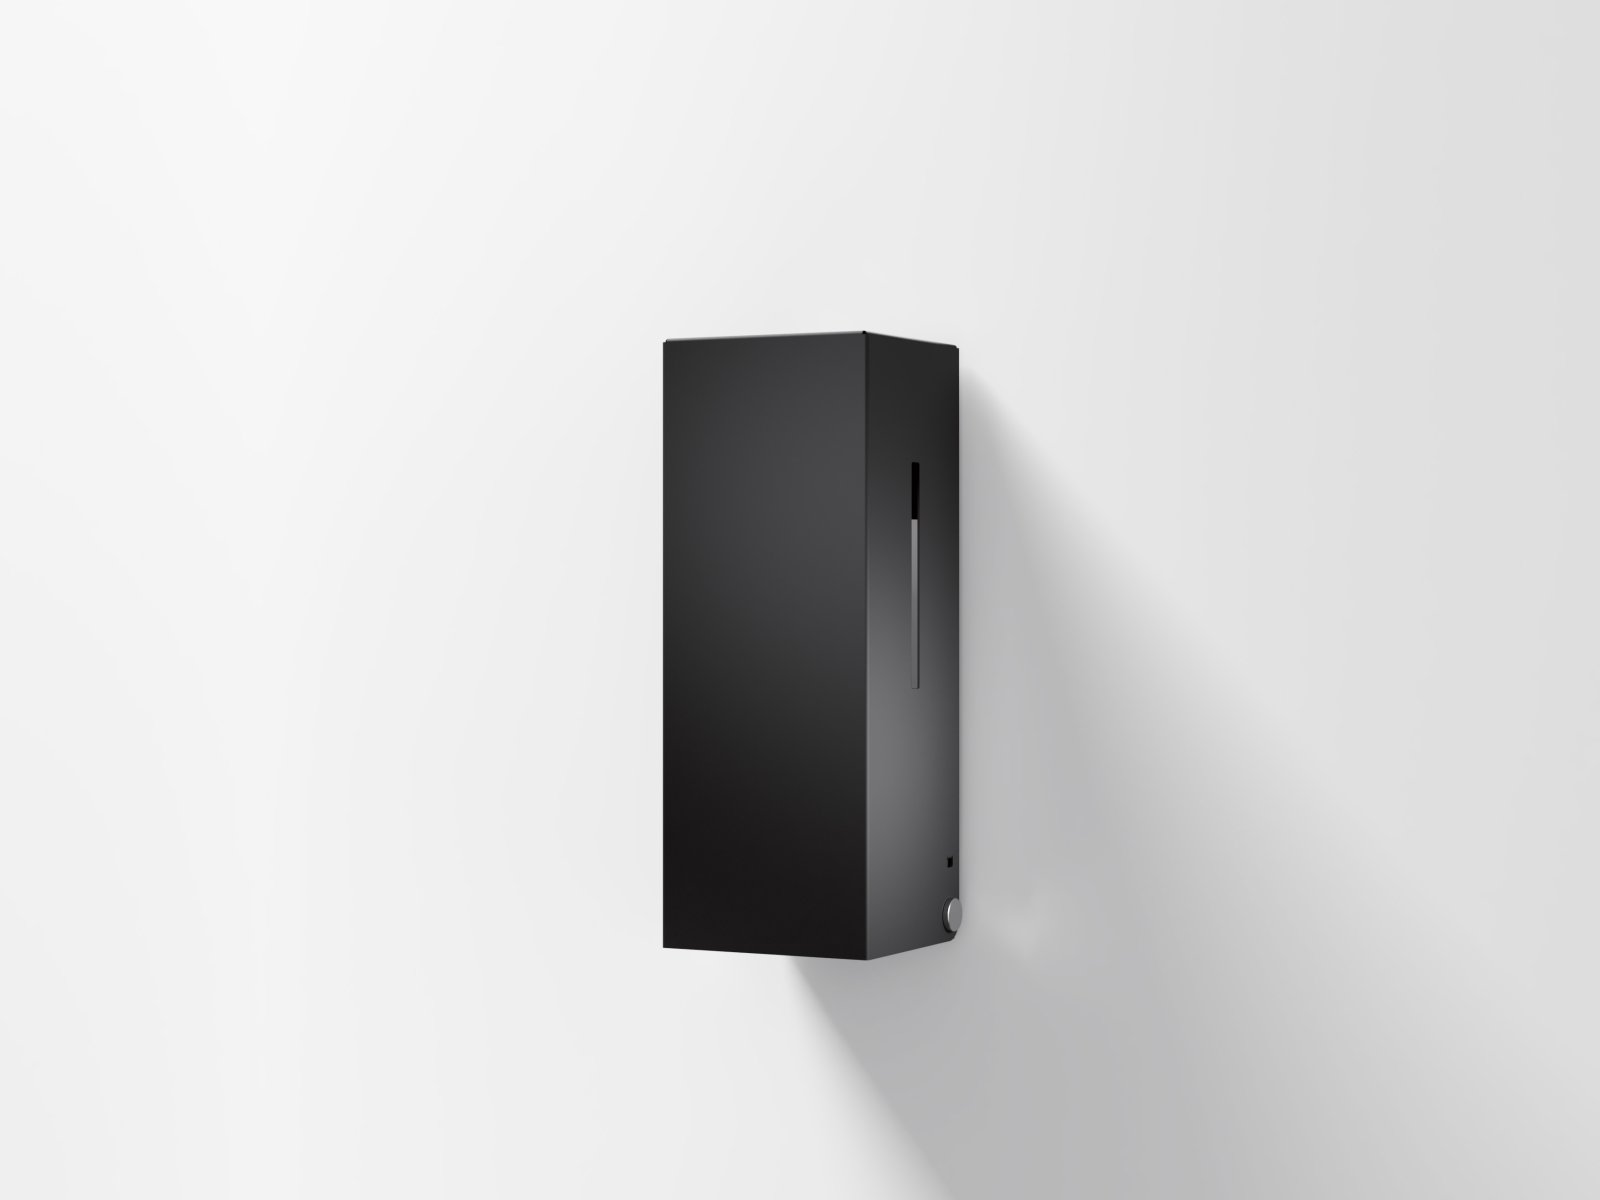 Touchless soap dispenser with angular design in matt black stainless steel